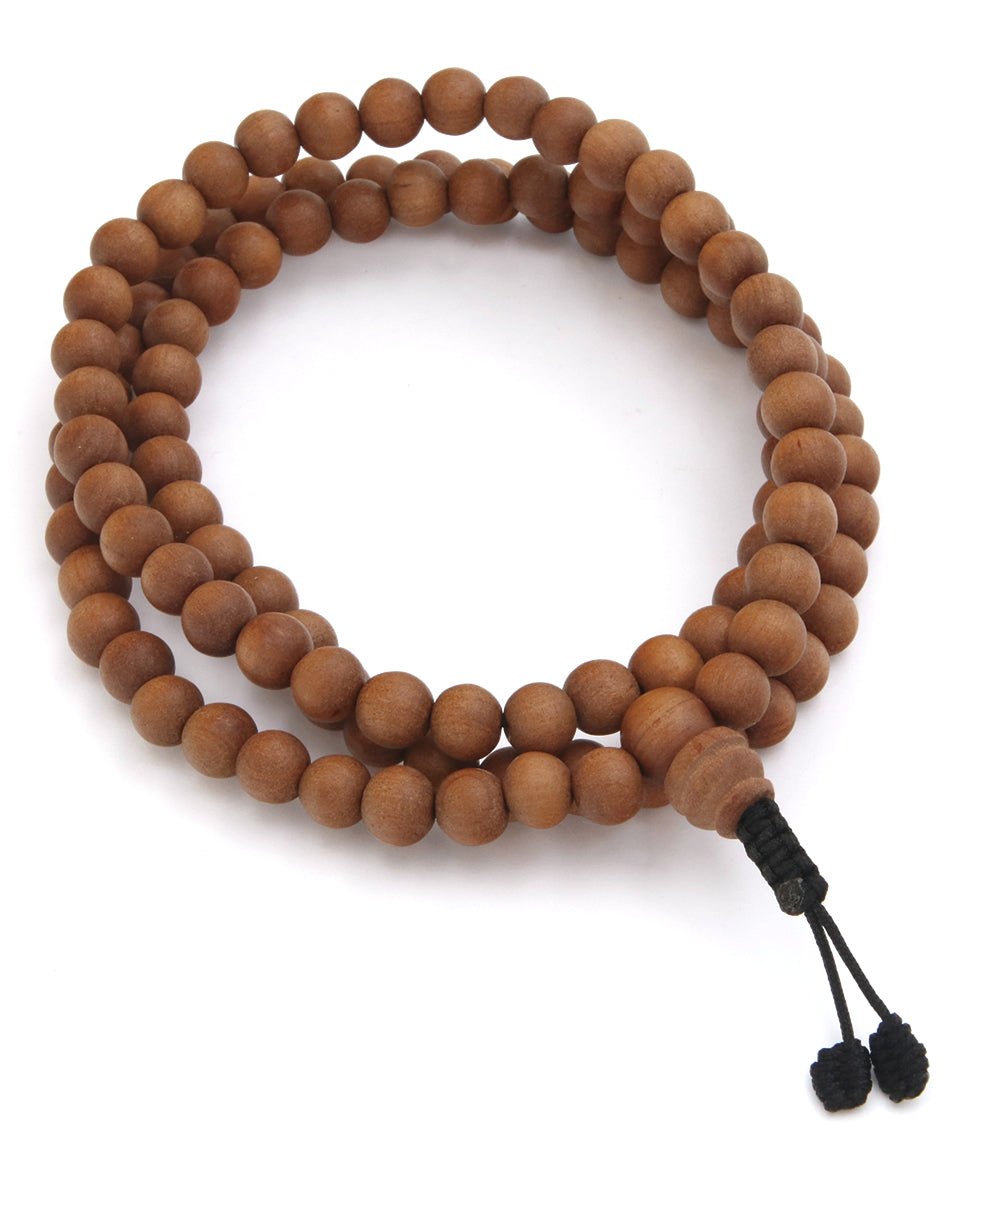 Meditation Bracelet – Buddhist Prayer Beads